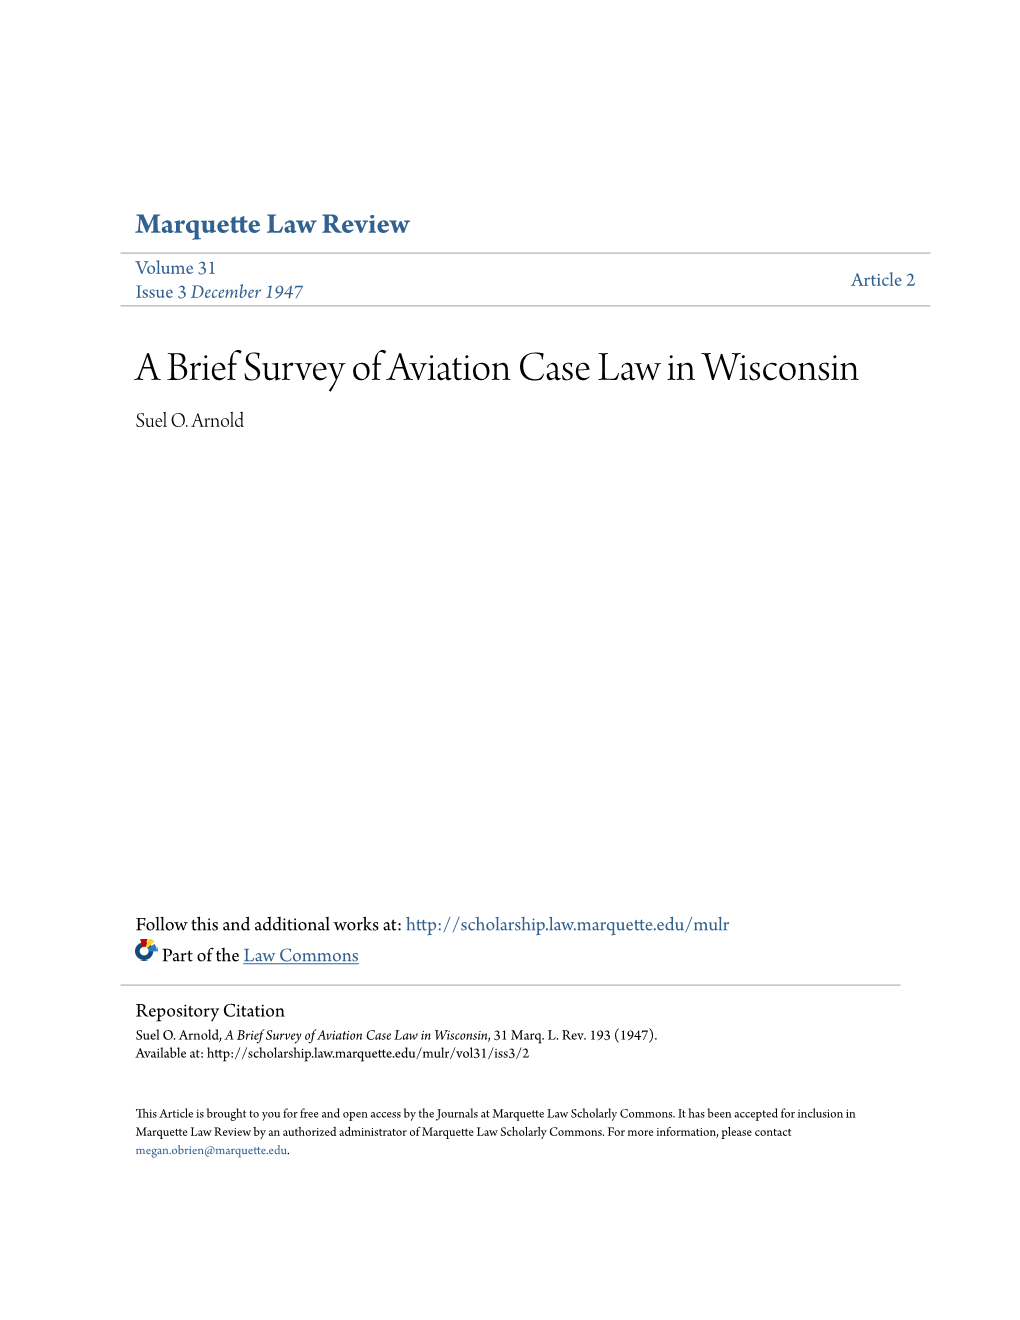 A Brief Survey of Aviation Case Law in Wisconsin Suel O